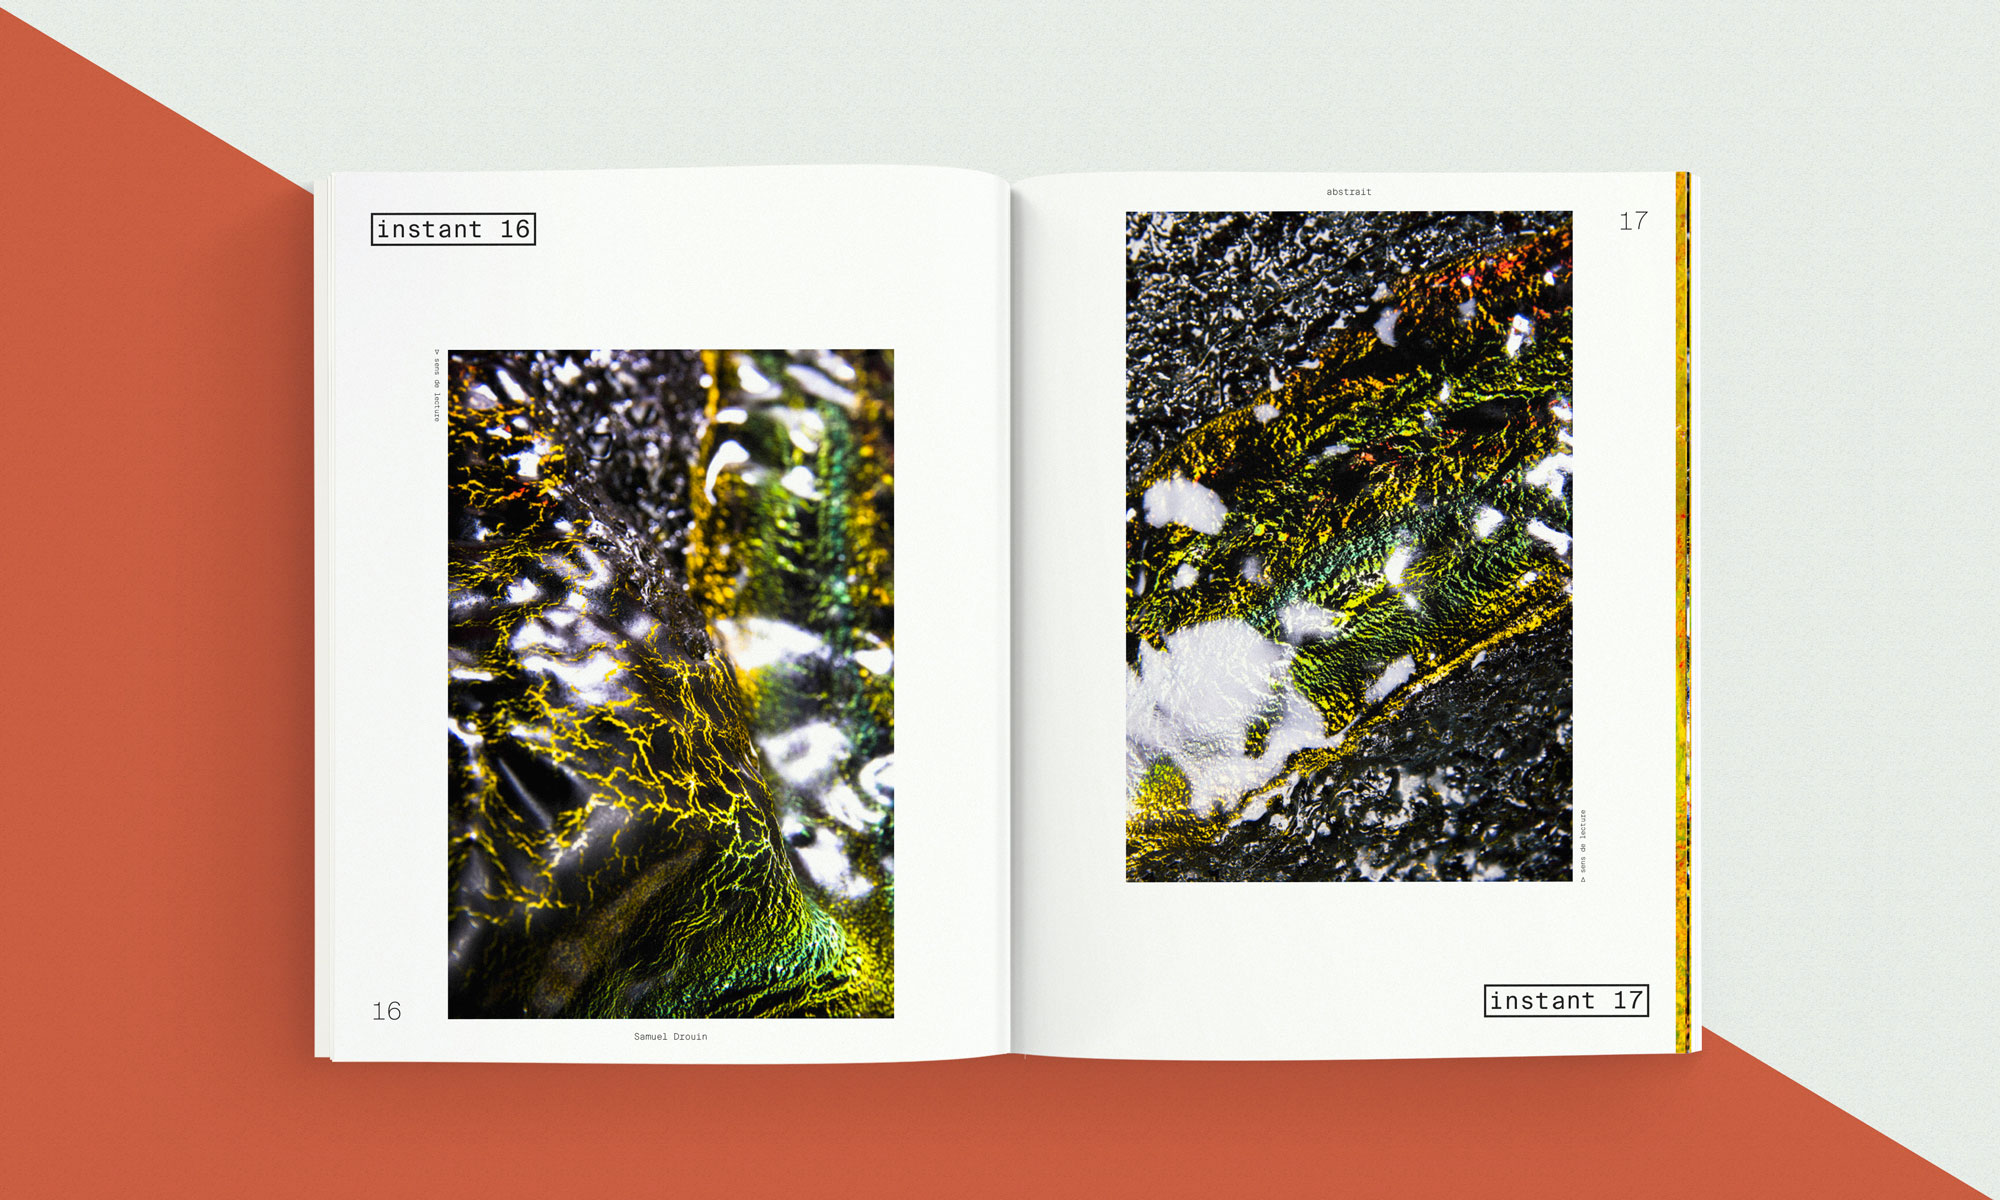 Catalogue 01
Réalisé par Au-delà studio.
Aloïs Ancenay 